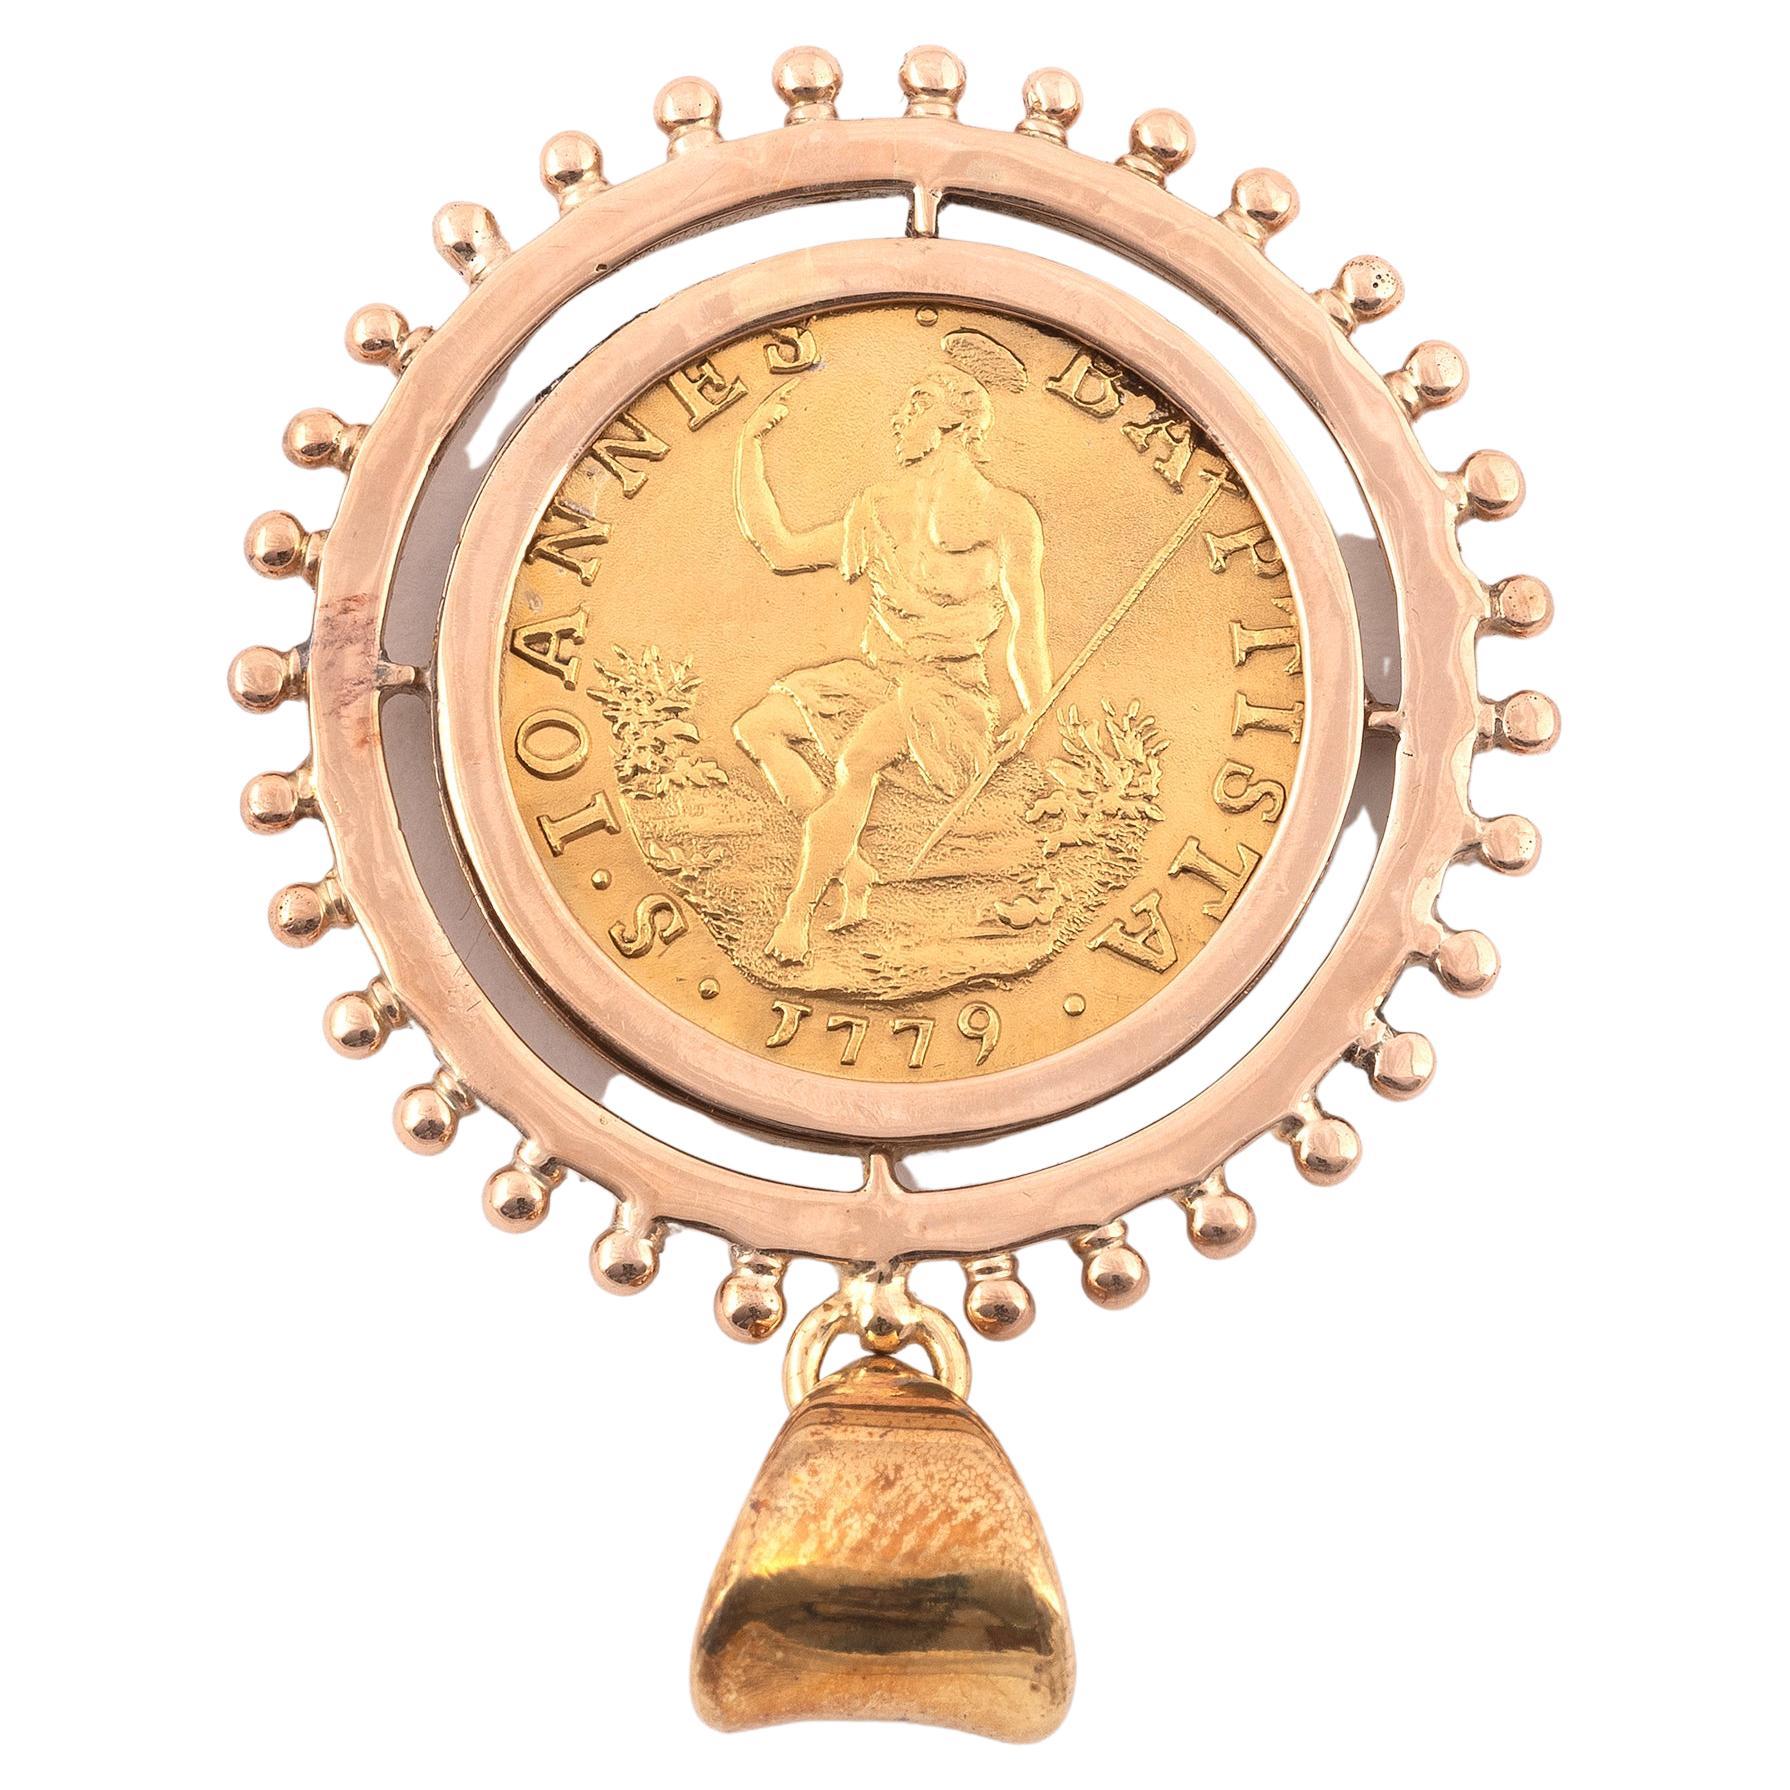 Antike Goldmünze Fiorino von 1779 mit Goldanhänger.
Durchmesser: 3,2cm
Gewicht: 8,52 g.